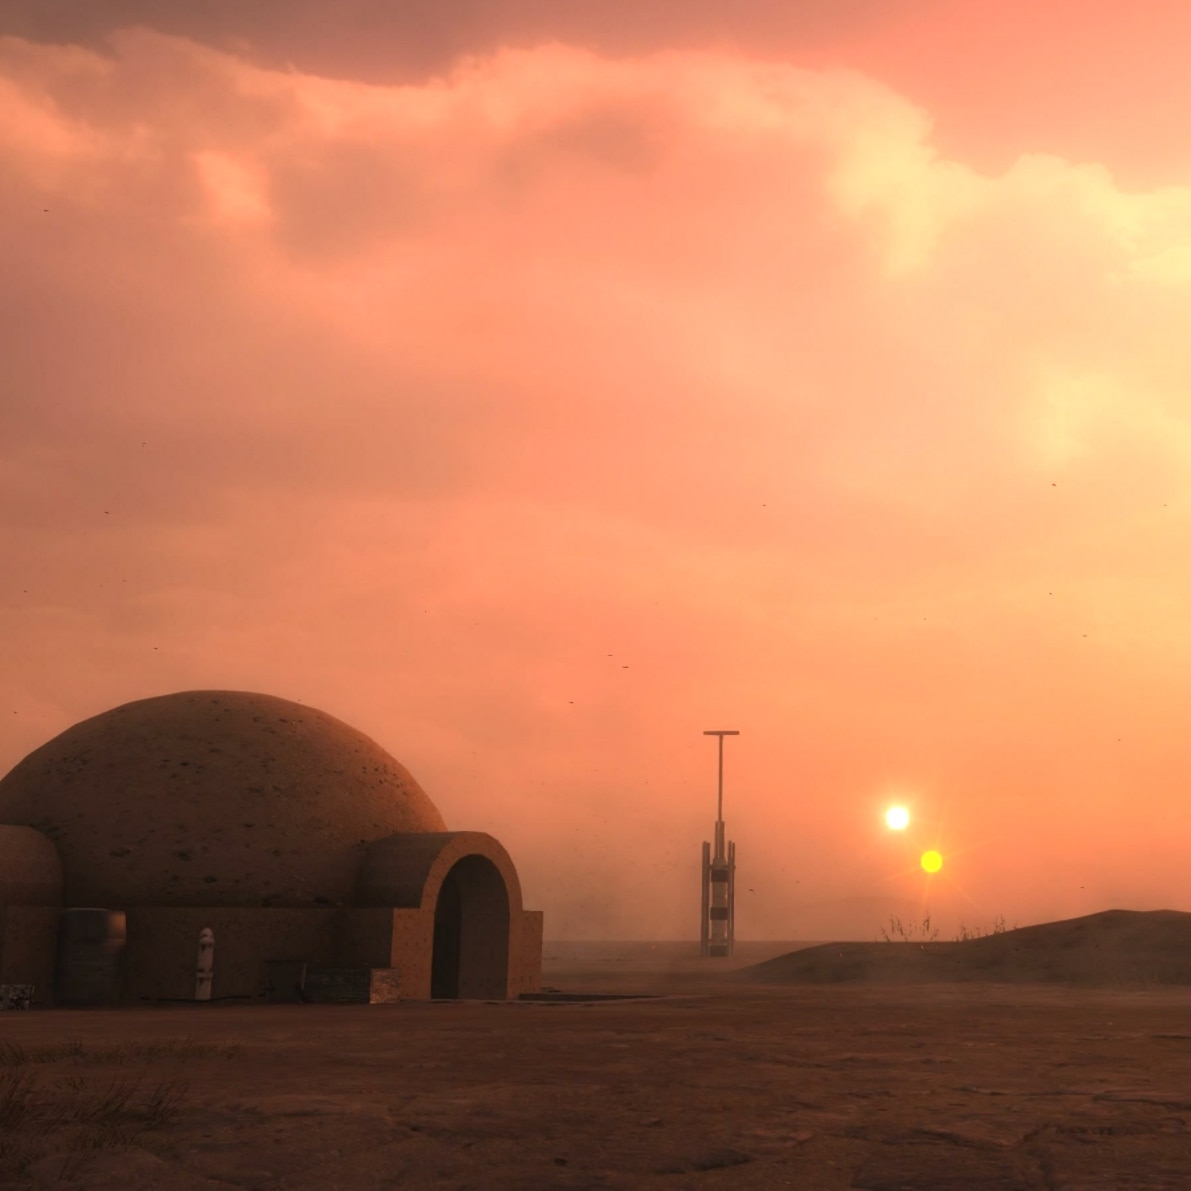 Star wars Tatooine Sunset